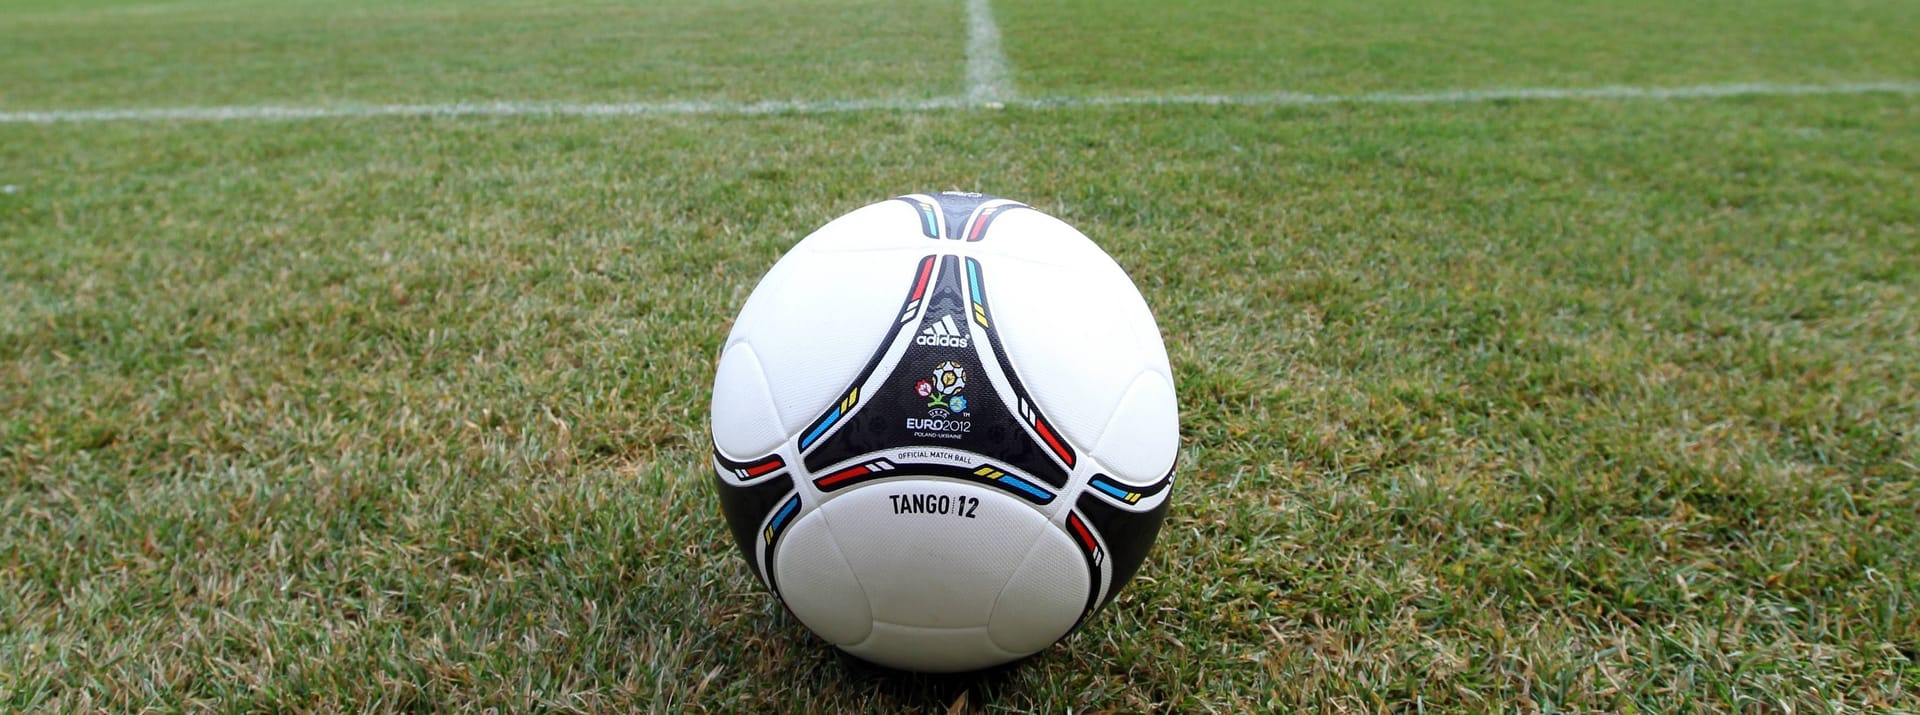 EM 2012: Der Adidas "Tango 12" war der Spielball für die Europameisterschaft in Polen und der Ukraine. Die Optik und der Name des Balls sind an den klassischen "Tango" von 1978 angelehnt.